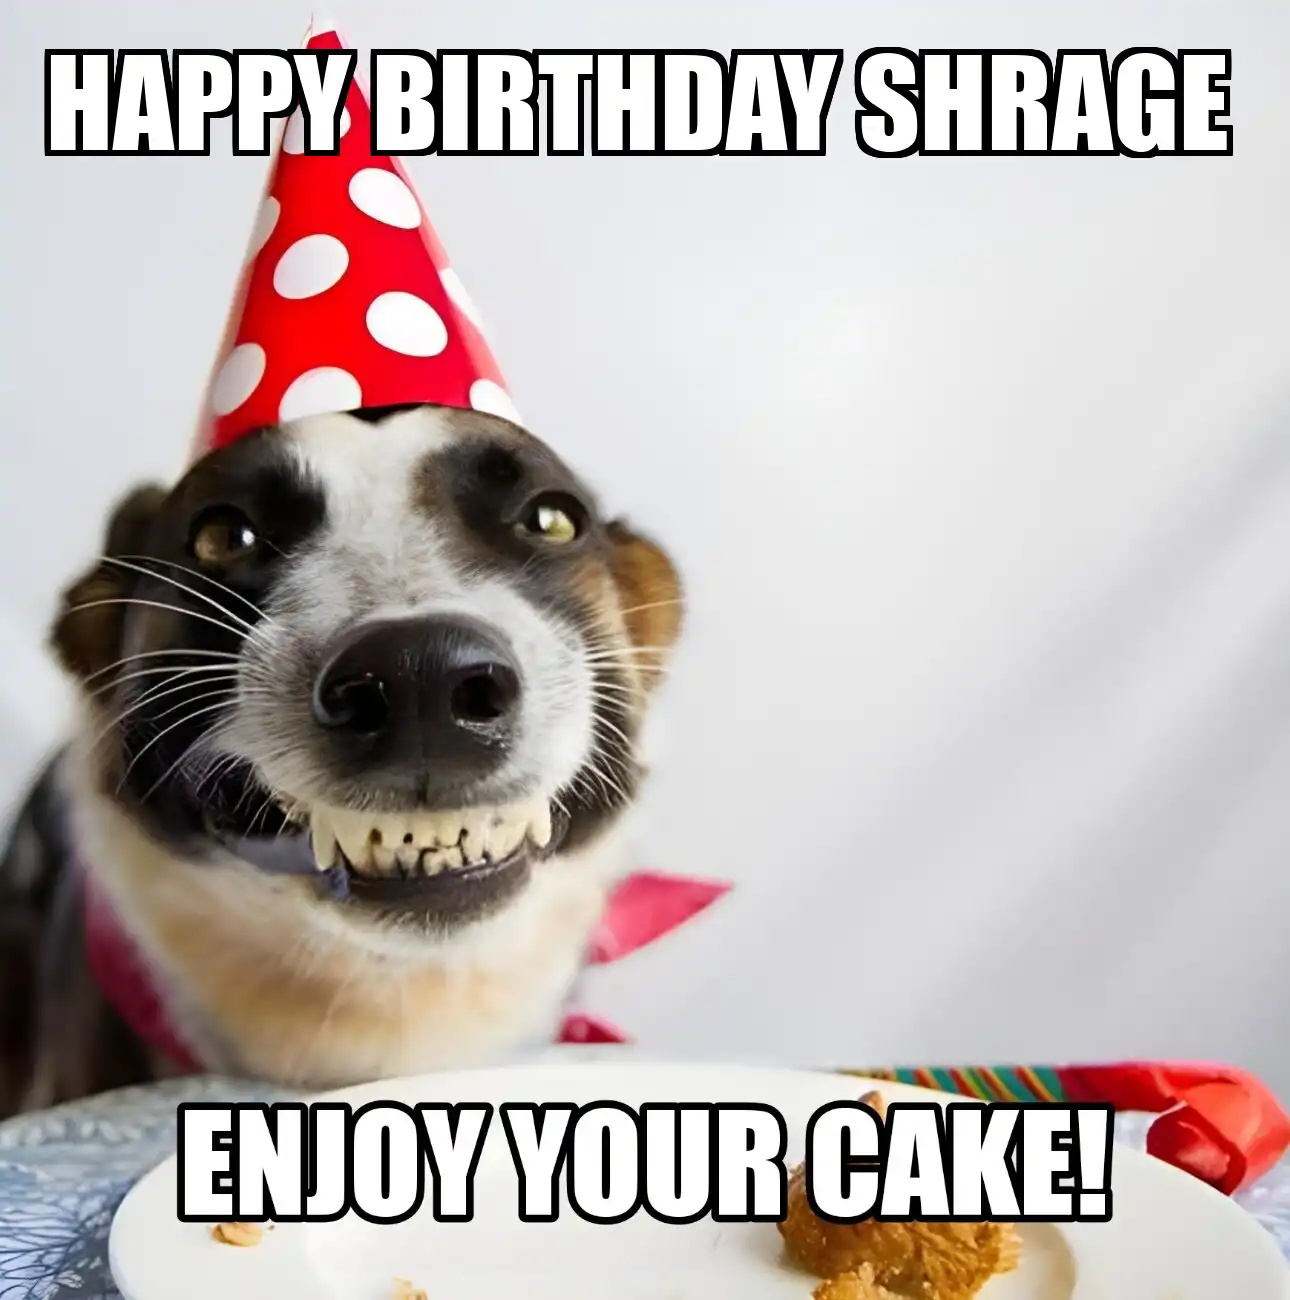 Happy Birthday Shrage Enjoy Your Cake Dog Meme